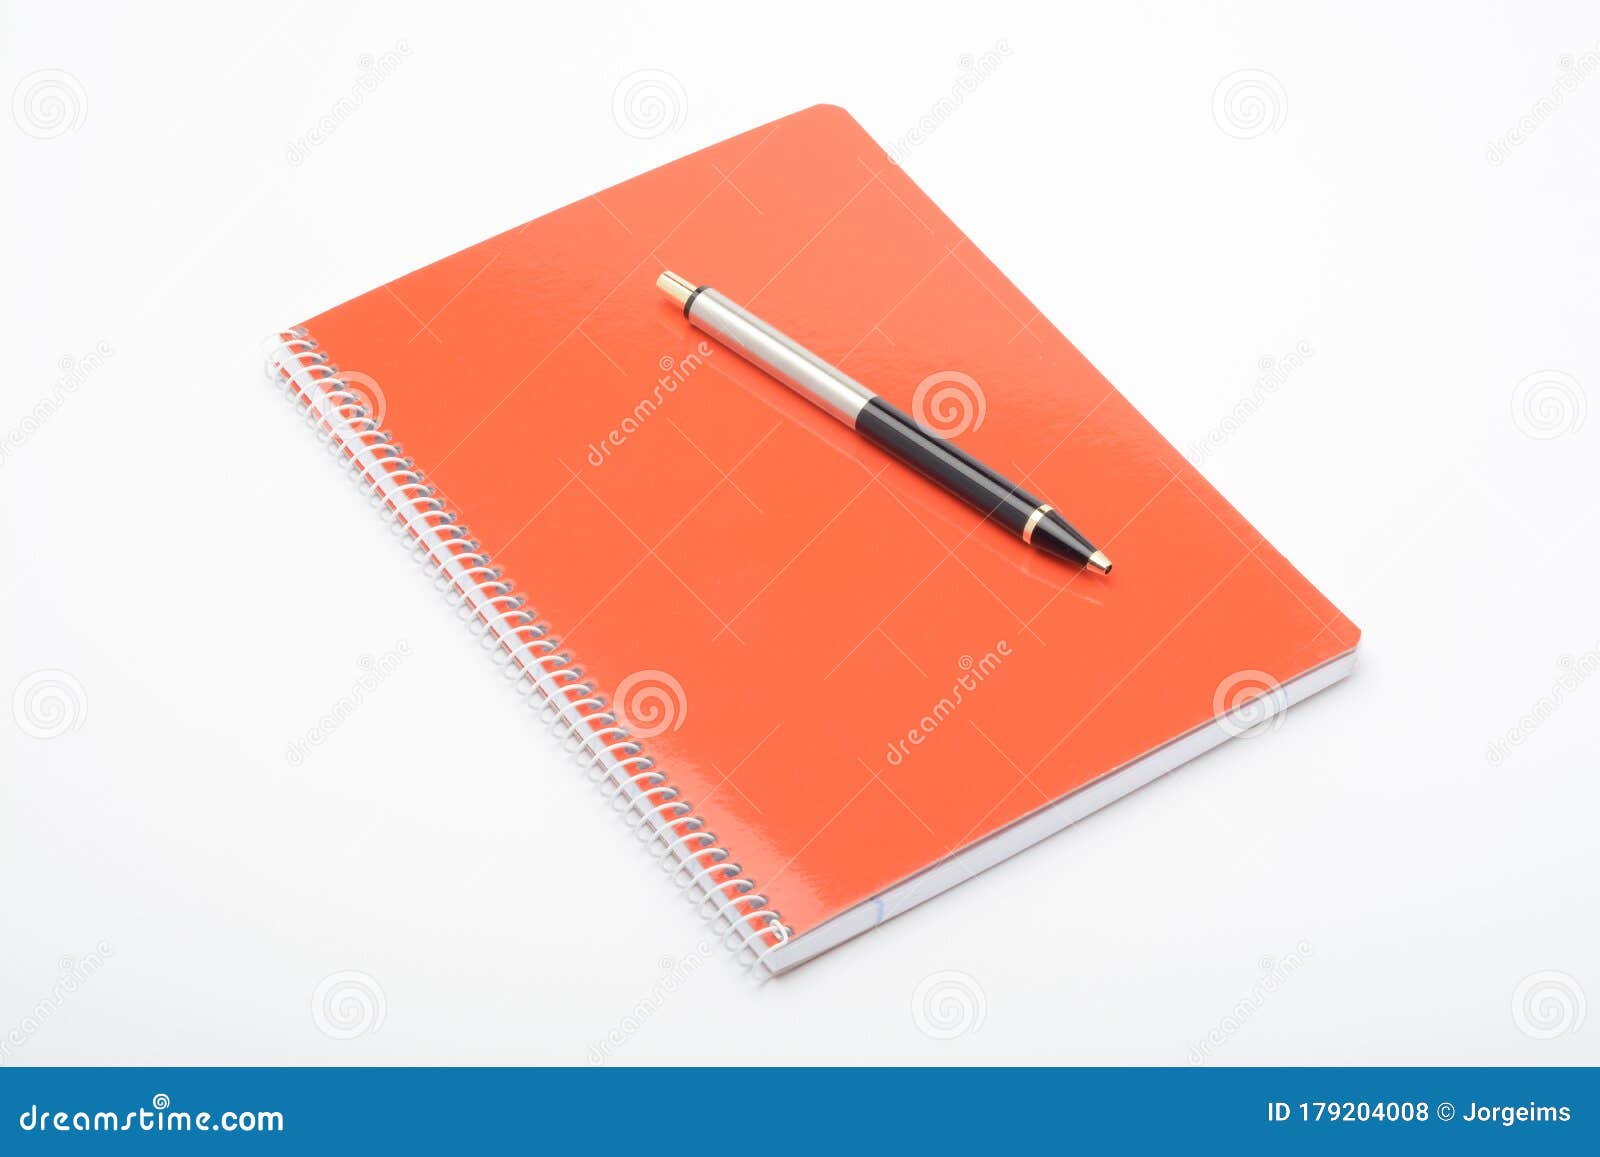 Sổ tay cam và bút ảnh stock là sự kết hợp tuyệt vời giữa style và sự tiện dụng. Hãy xem hình để thấy được sự trau chuốt và độc đáo của sản phẩm này!